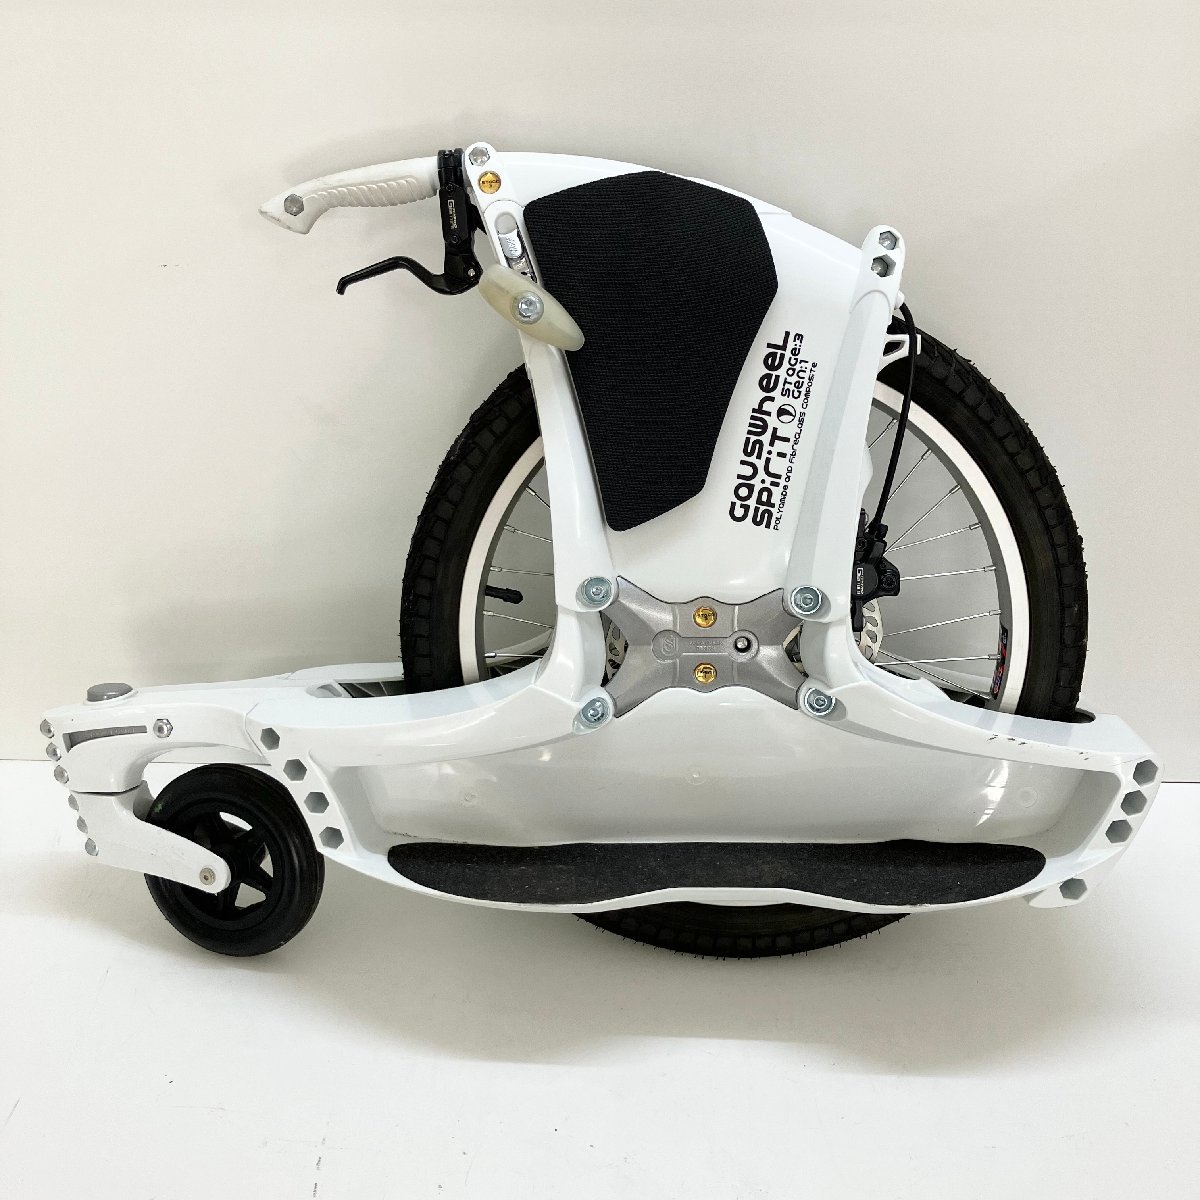 ◆【ジャンク品】Gaus Wheel ガウスホイール SPIRIT STAGE3 Gen1 ブレーキ付き 一輪車 スケボー 2015年製 白 現状品 (Z1)N/S60215/12/9.7_画像1